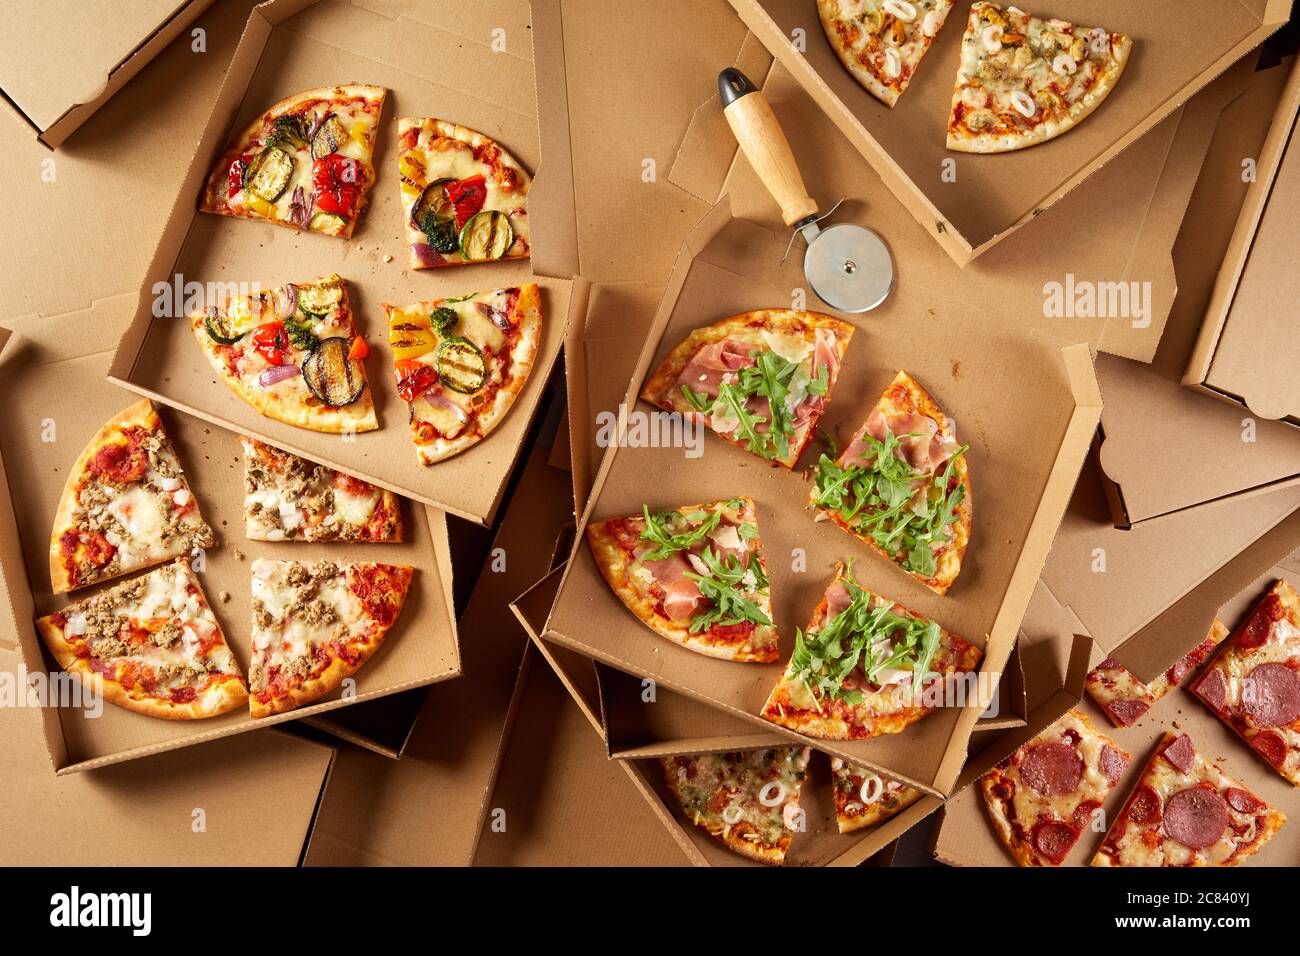 Vasto assortimento di condimenti su pizze italiane in scatole da asporto di cartone singole, viste dall'alto in basso, tagliate a porzioni con una taglierina per pasticceria Foto Stock